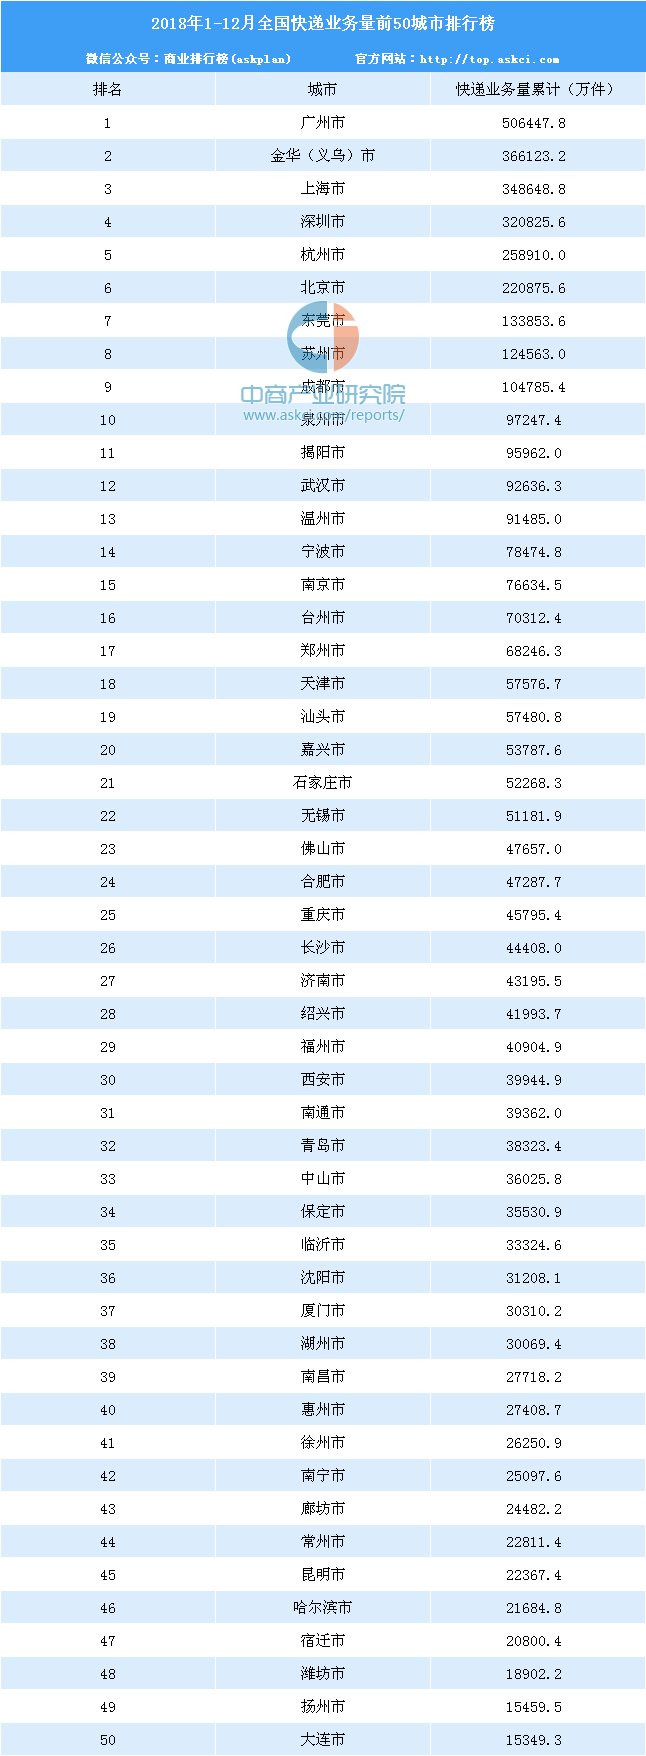 2018年度全国城市快递量排名:广州第一 累计超